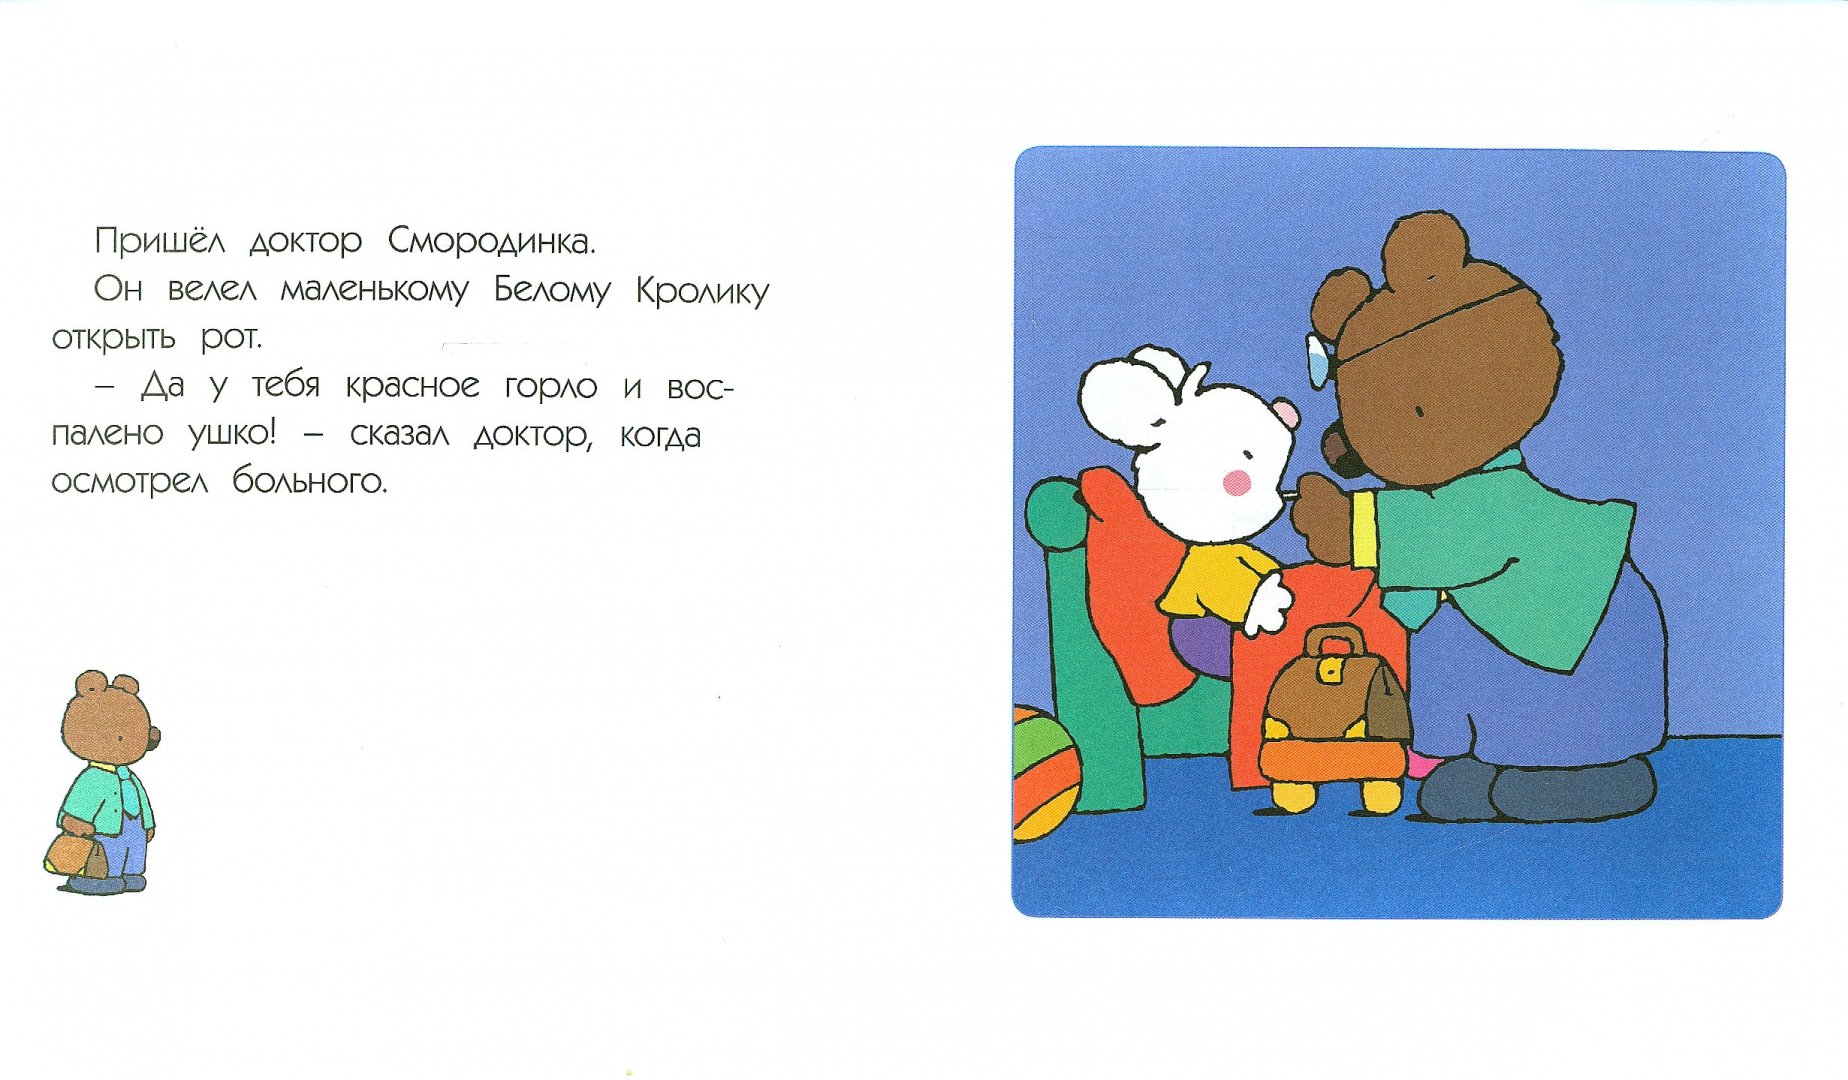 Иллюстрация 1 из 17 для Маленький Белый Кролик идет к врачу - Флури, Буанар | Лабиринт - книги. Источник: Лабиринт